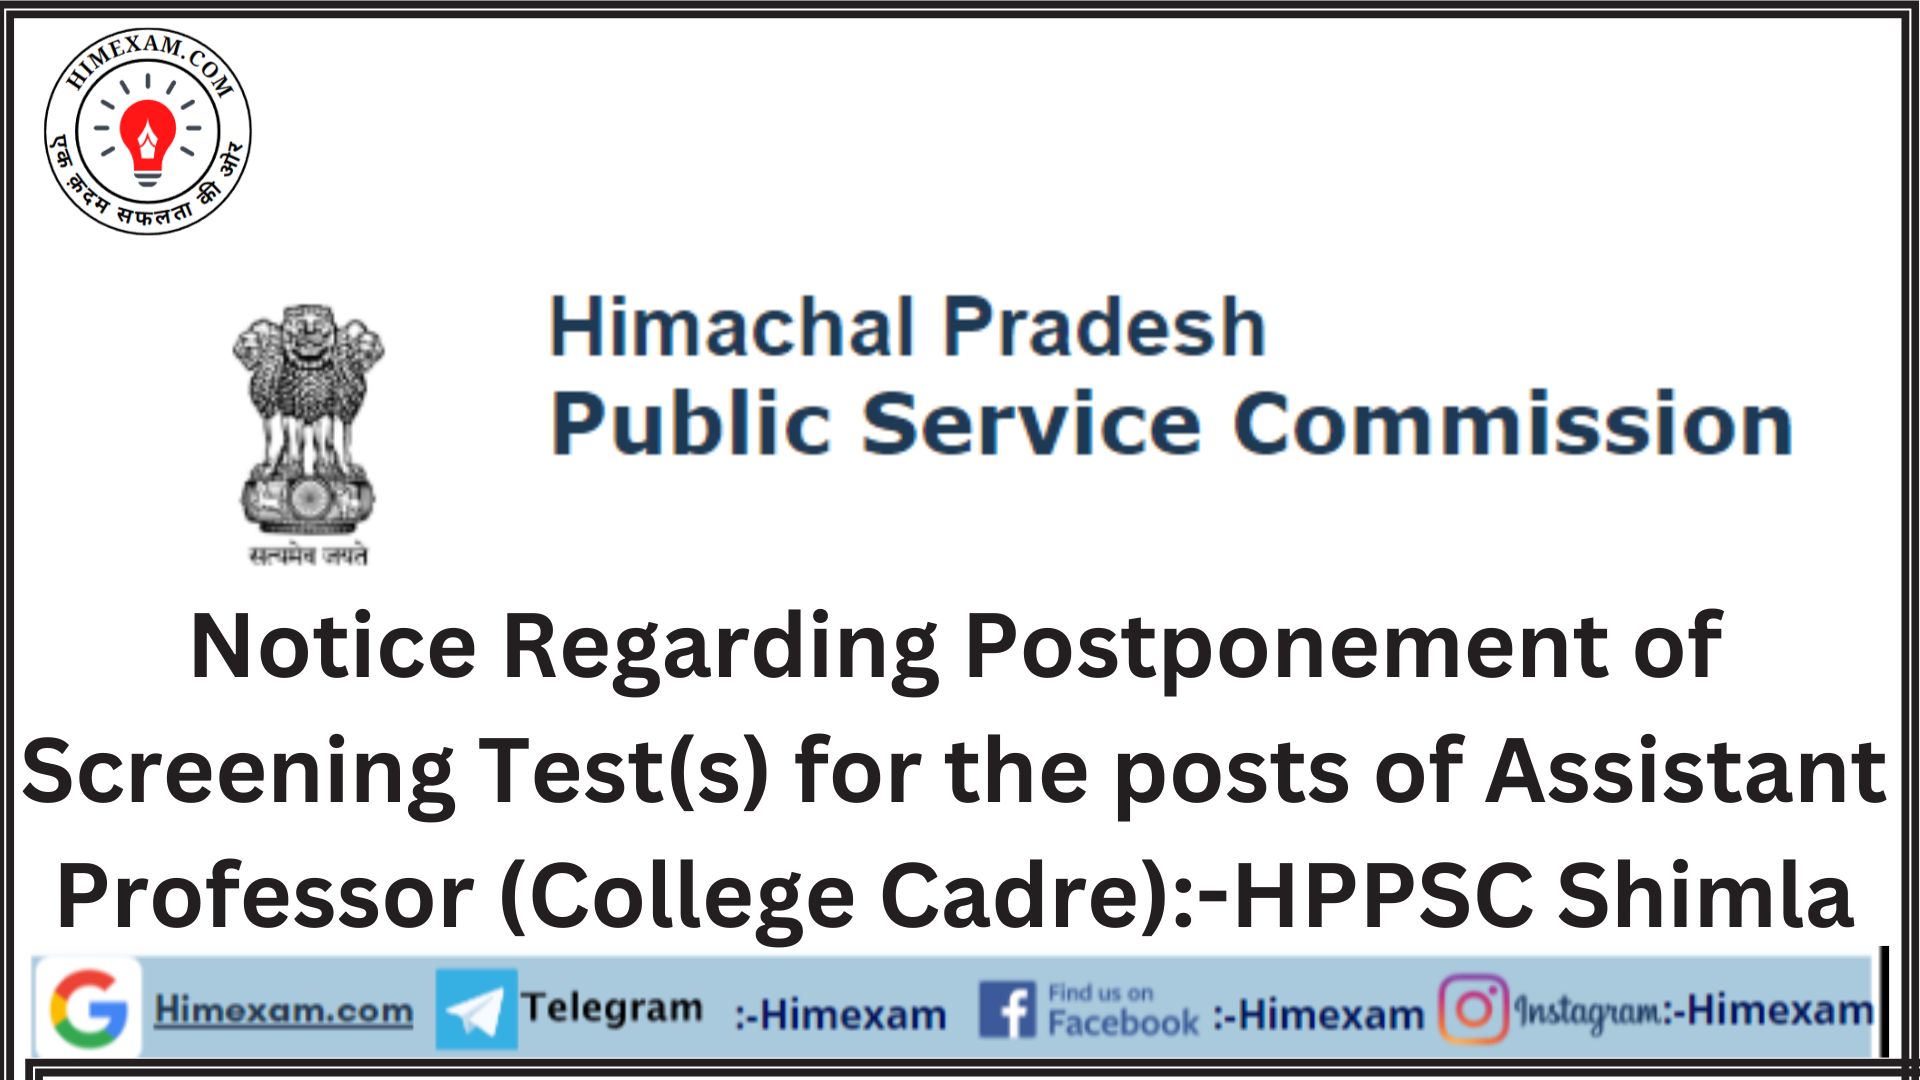 Notice Regarding Postponement of Screening Test(s) for the posts of Assistant Professor (College Cadre):-HPPSC Shimla